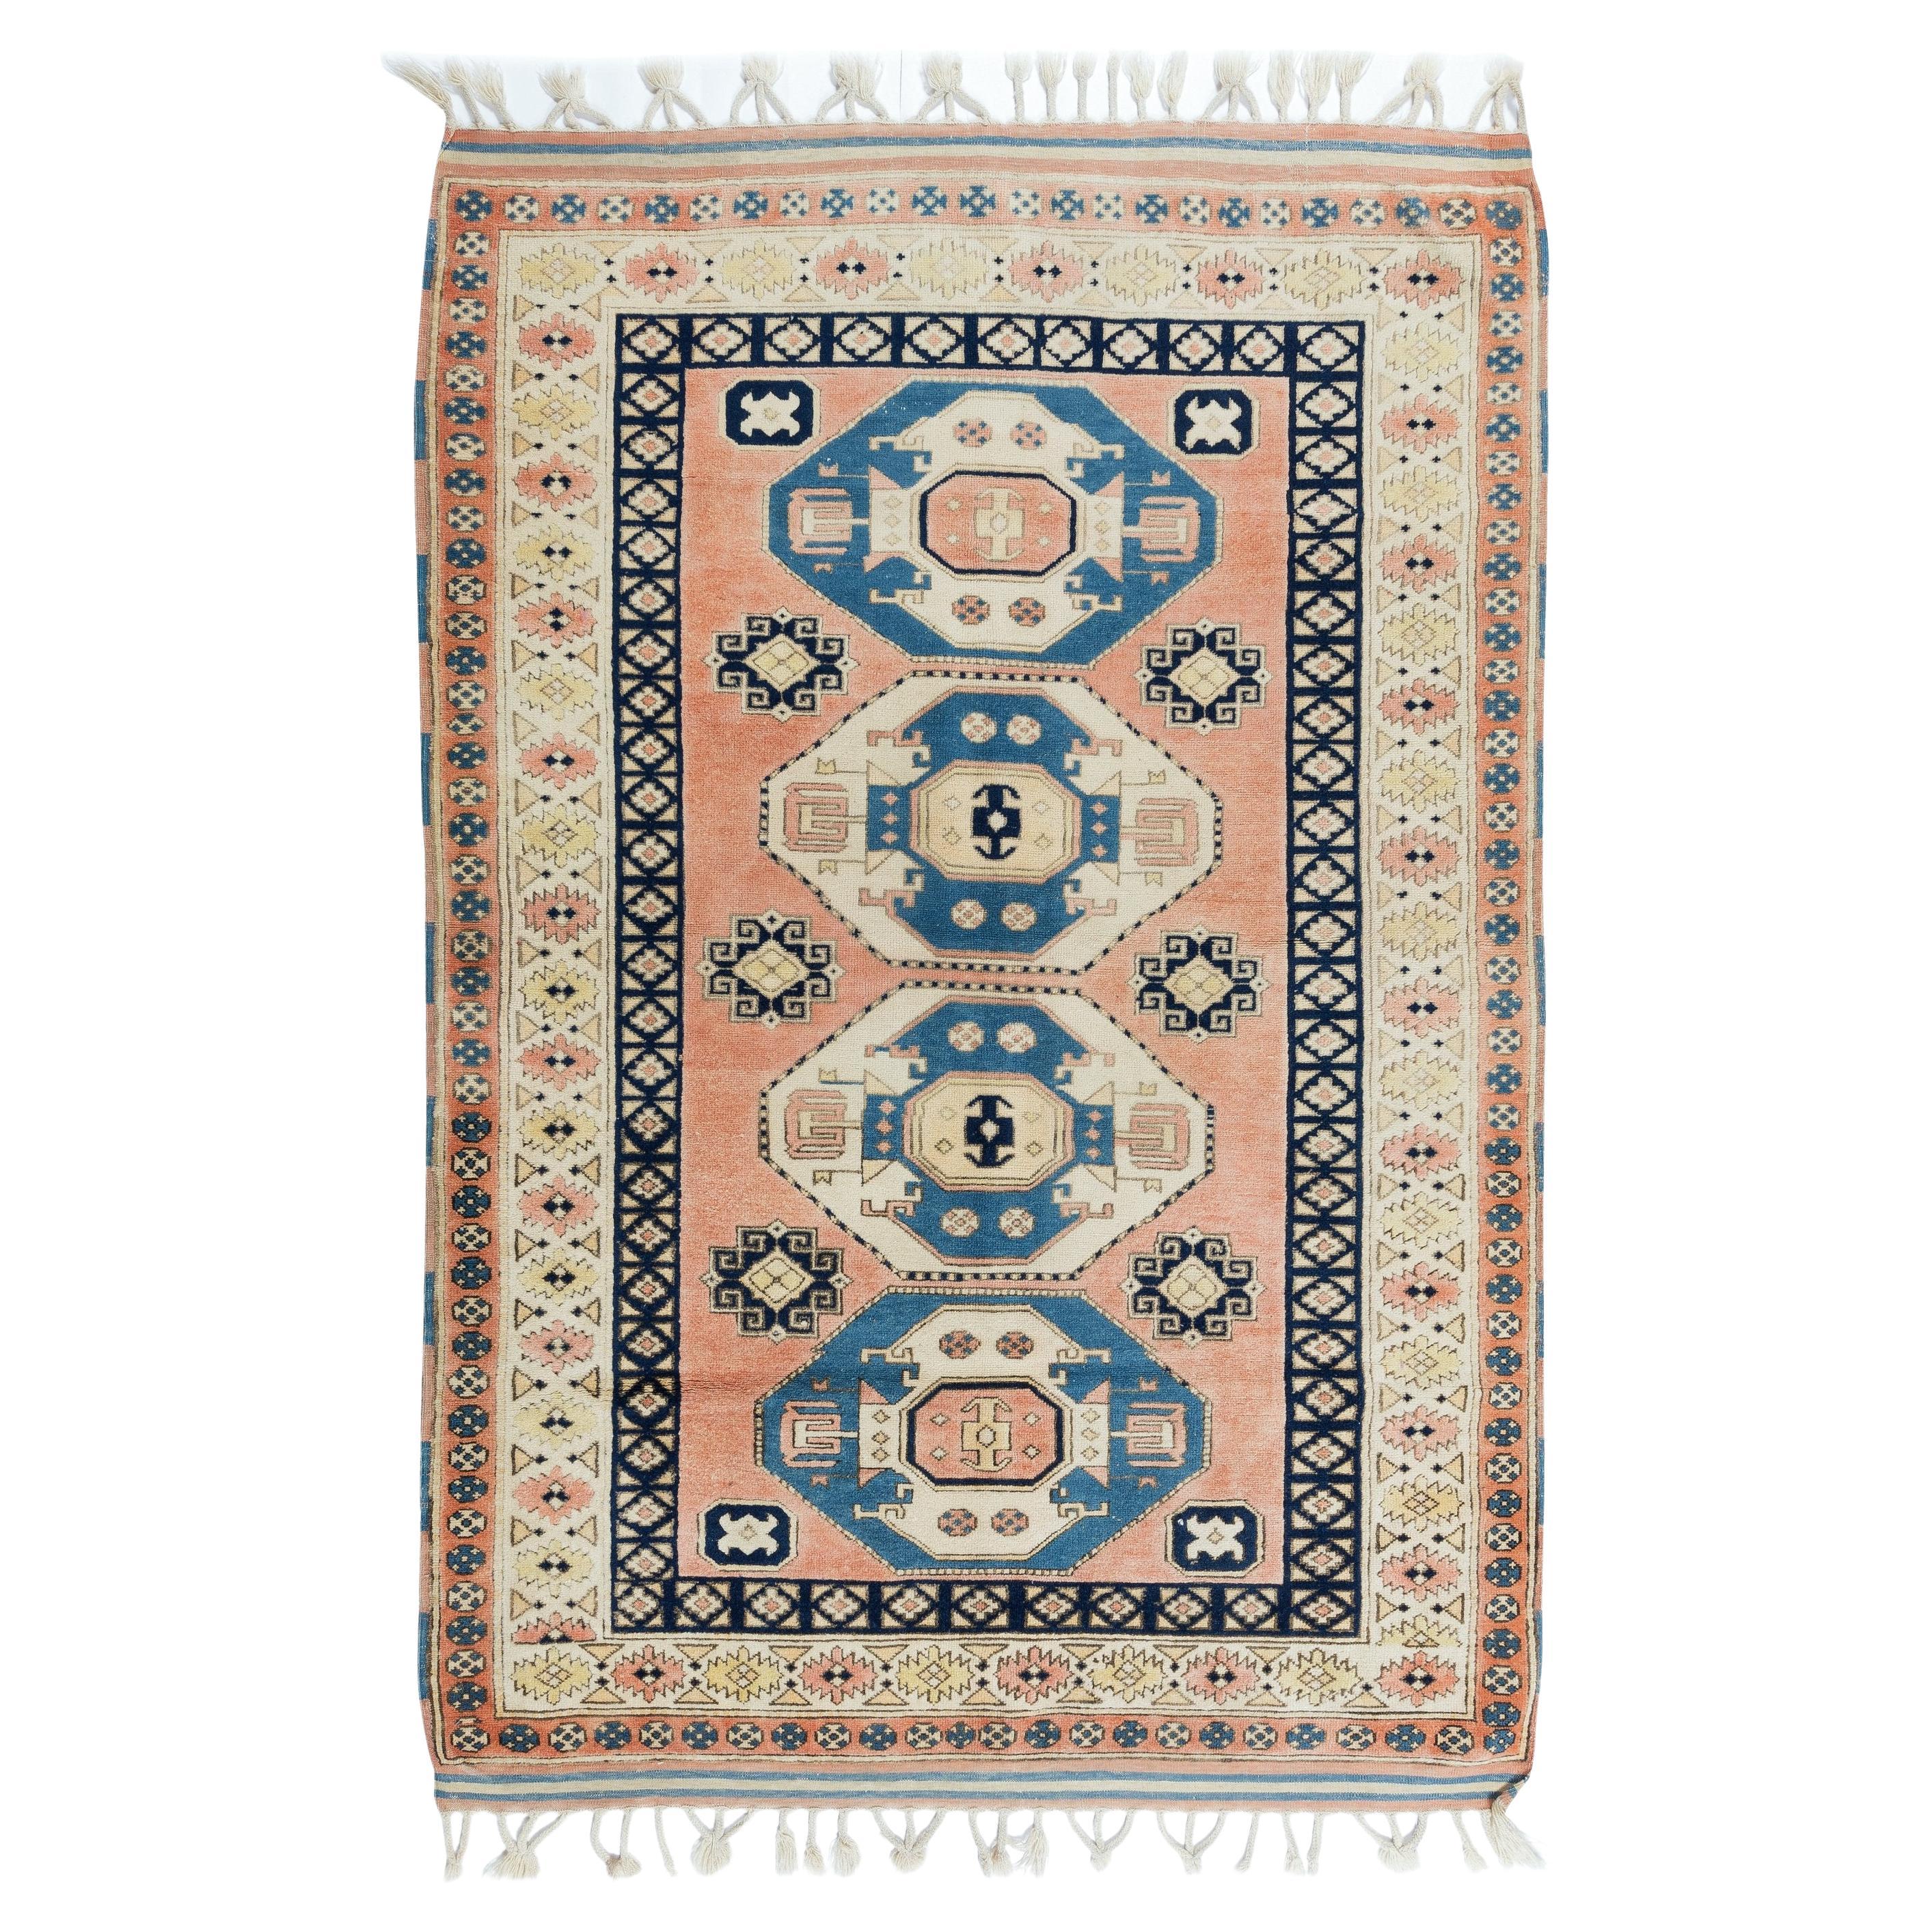 4.2x6 Ft Vintage Handgefertigter türkischer Teppich, Unikat mit geometrischem Muster im Angebot